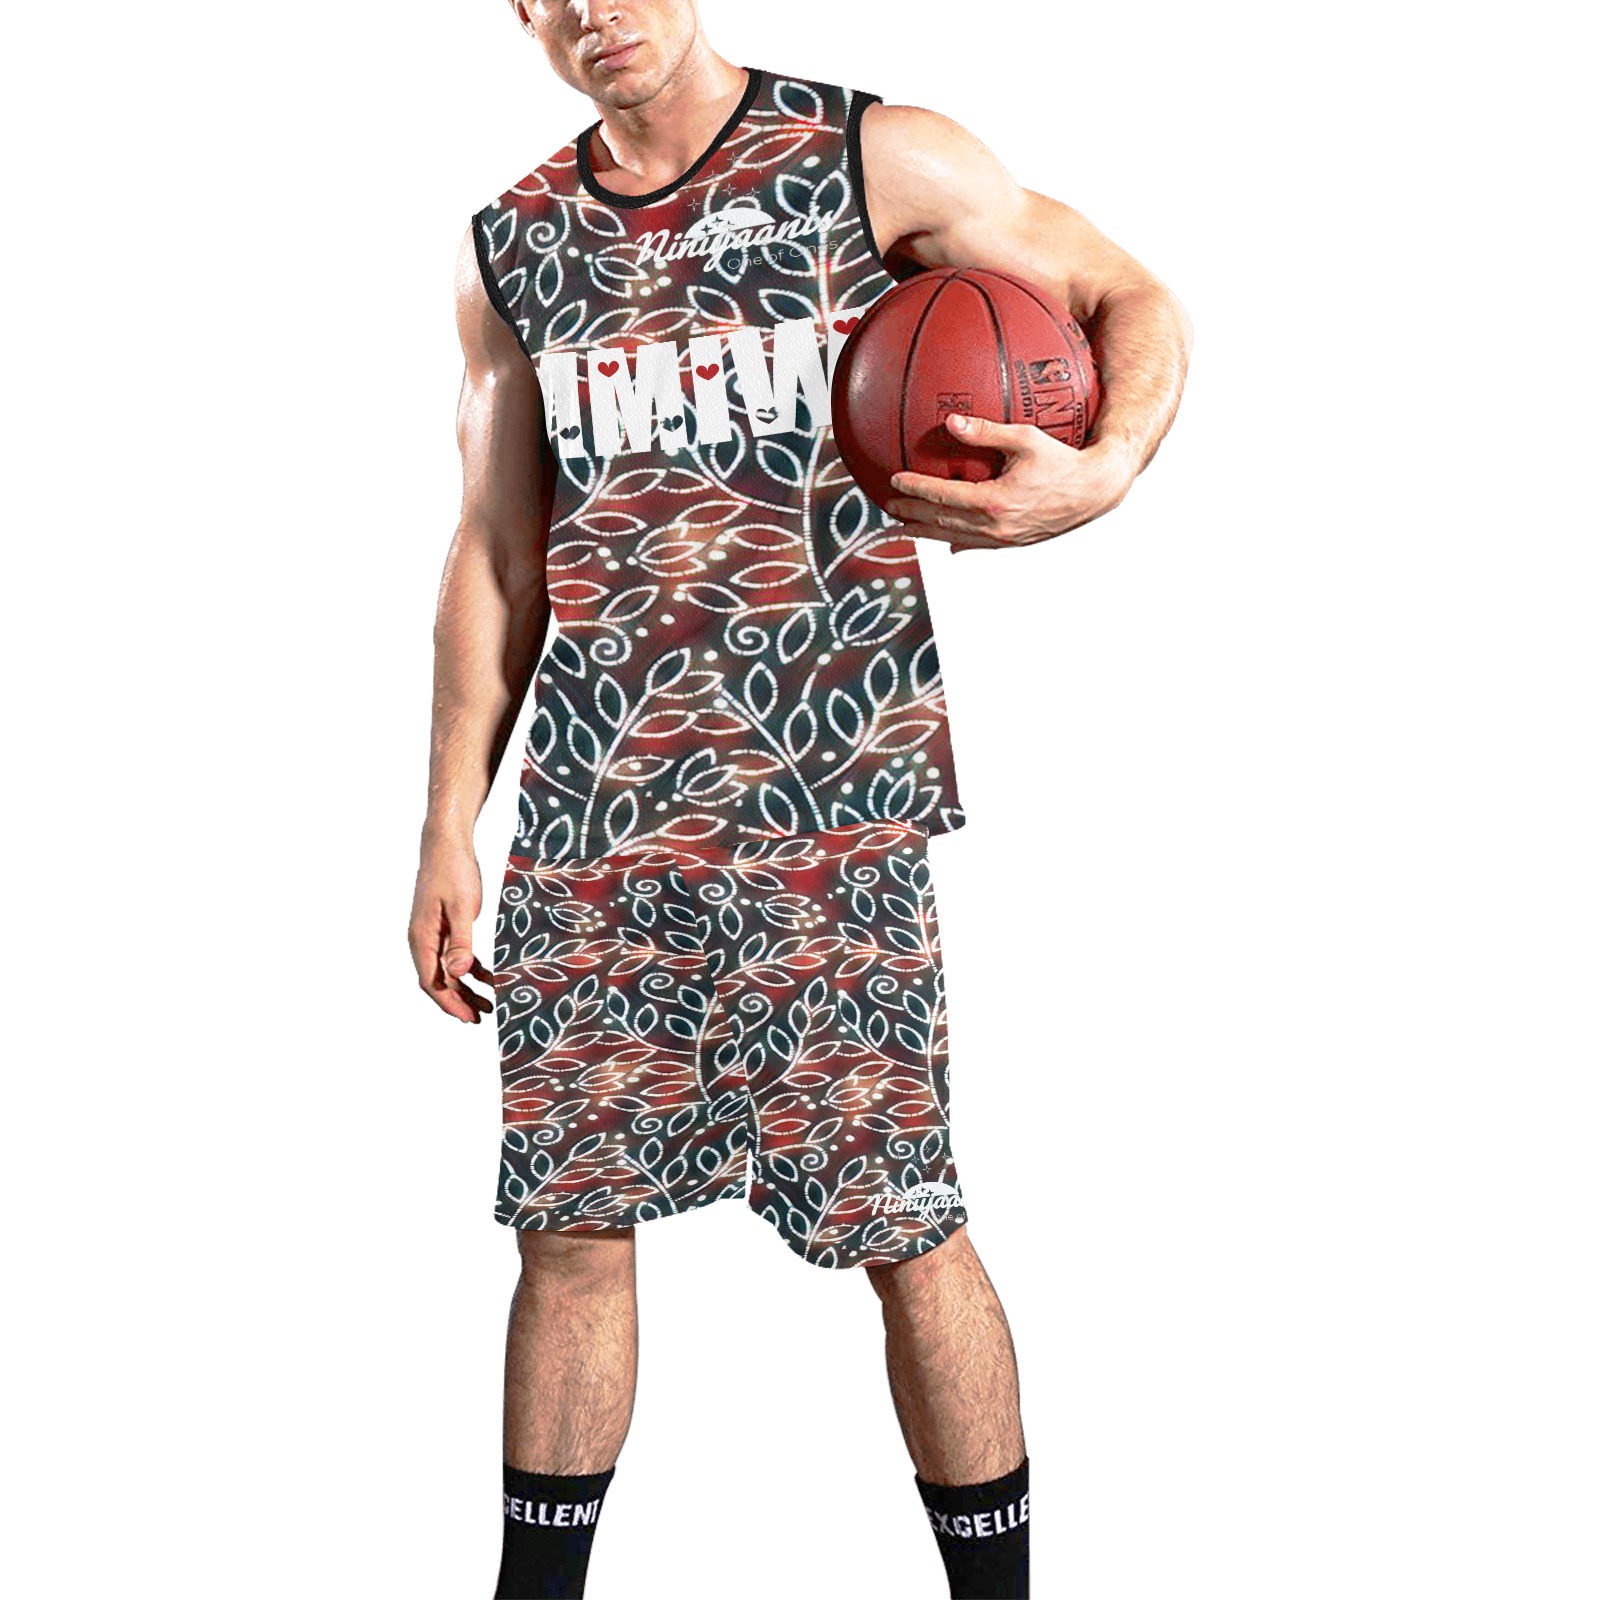 MMIW smith All Over Print Basketball Uniform